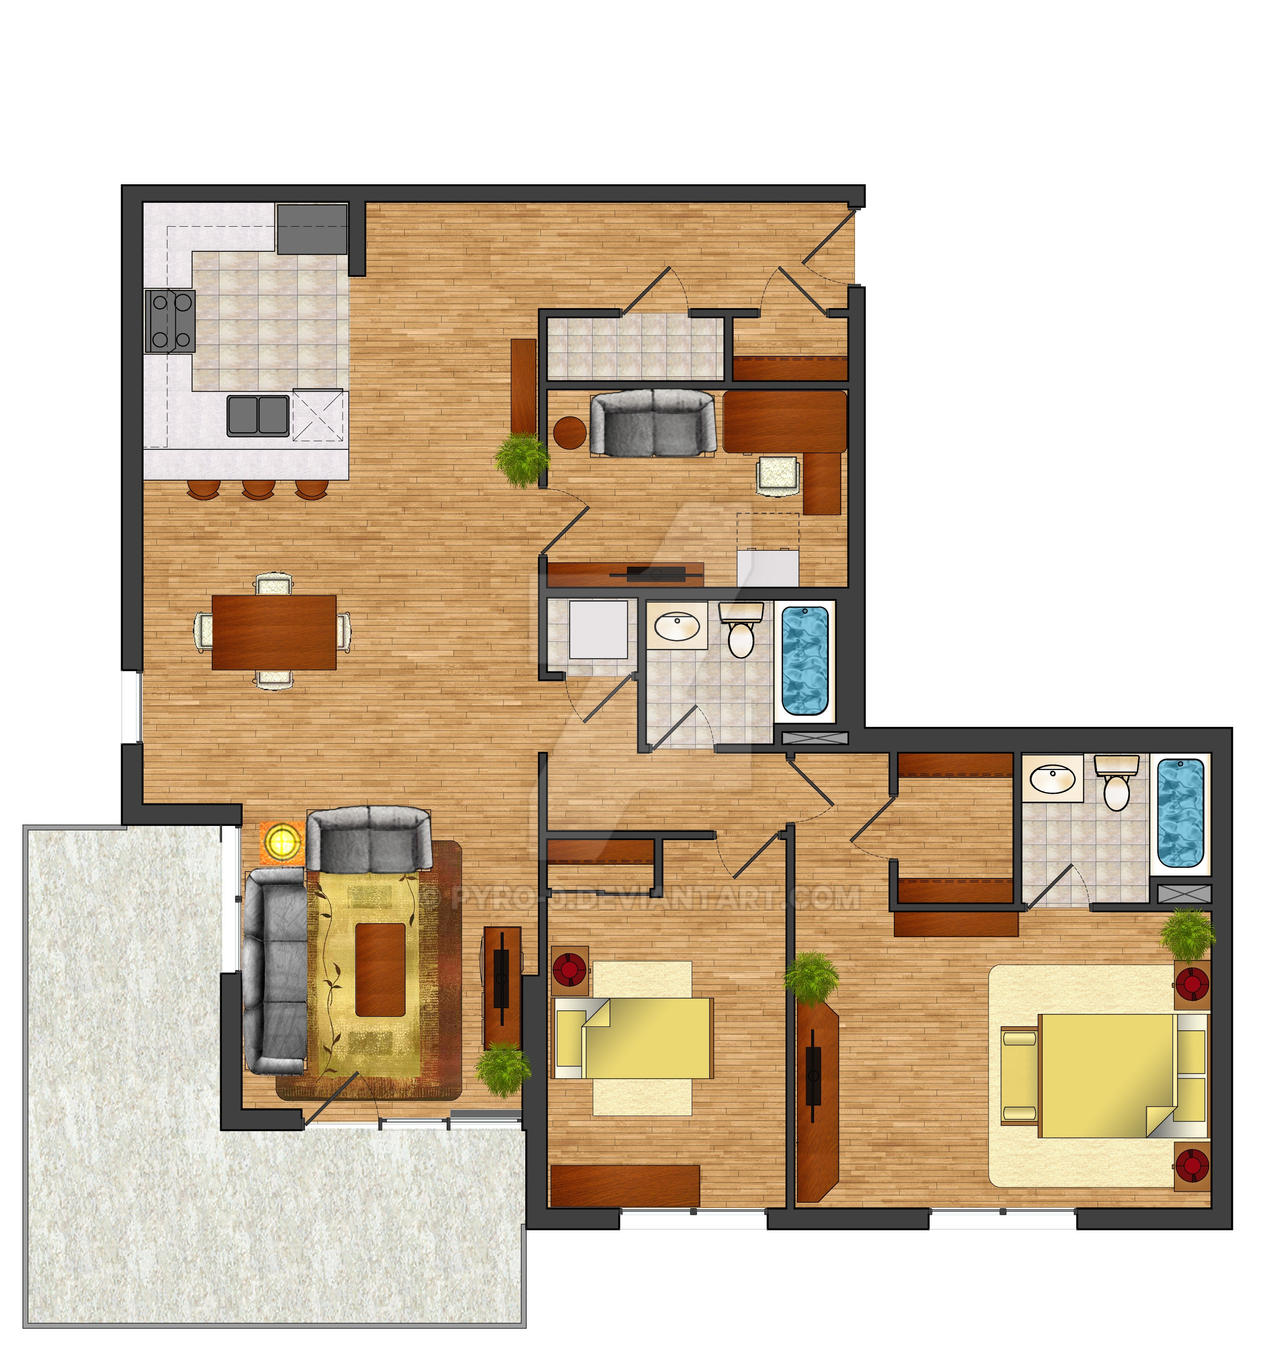 Rendered Floor Plan by pyro 0 on DeviantArt